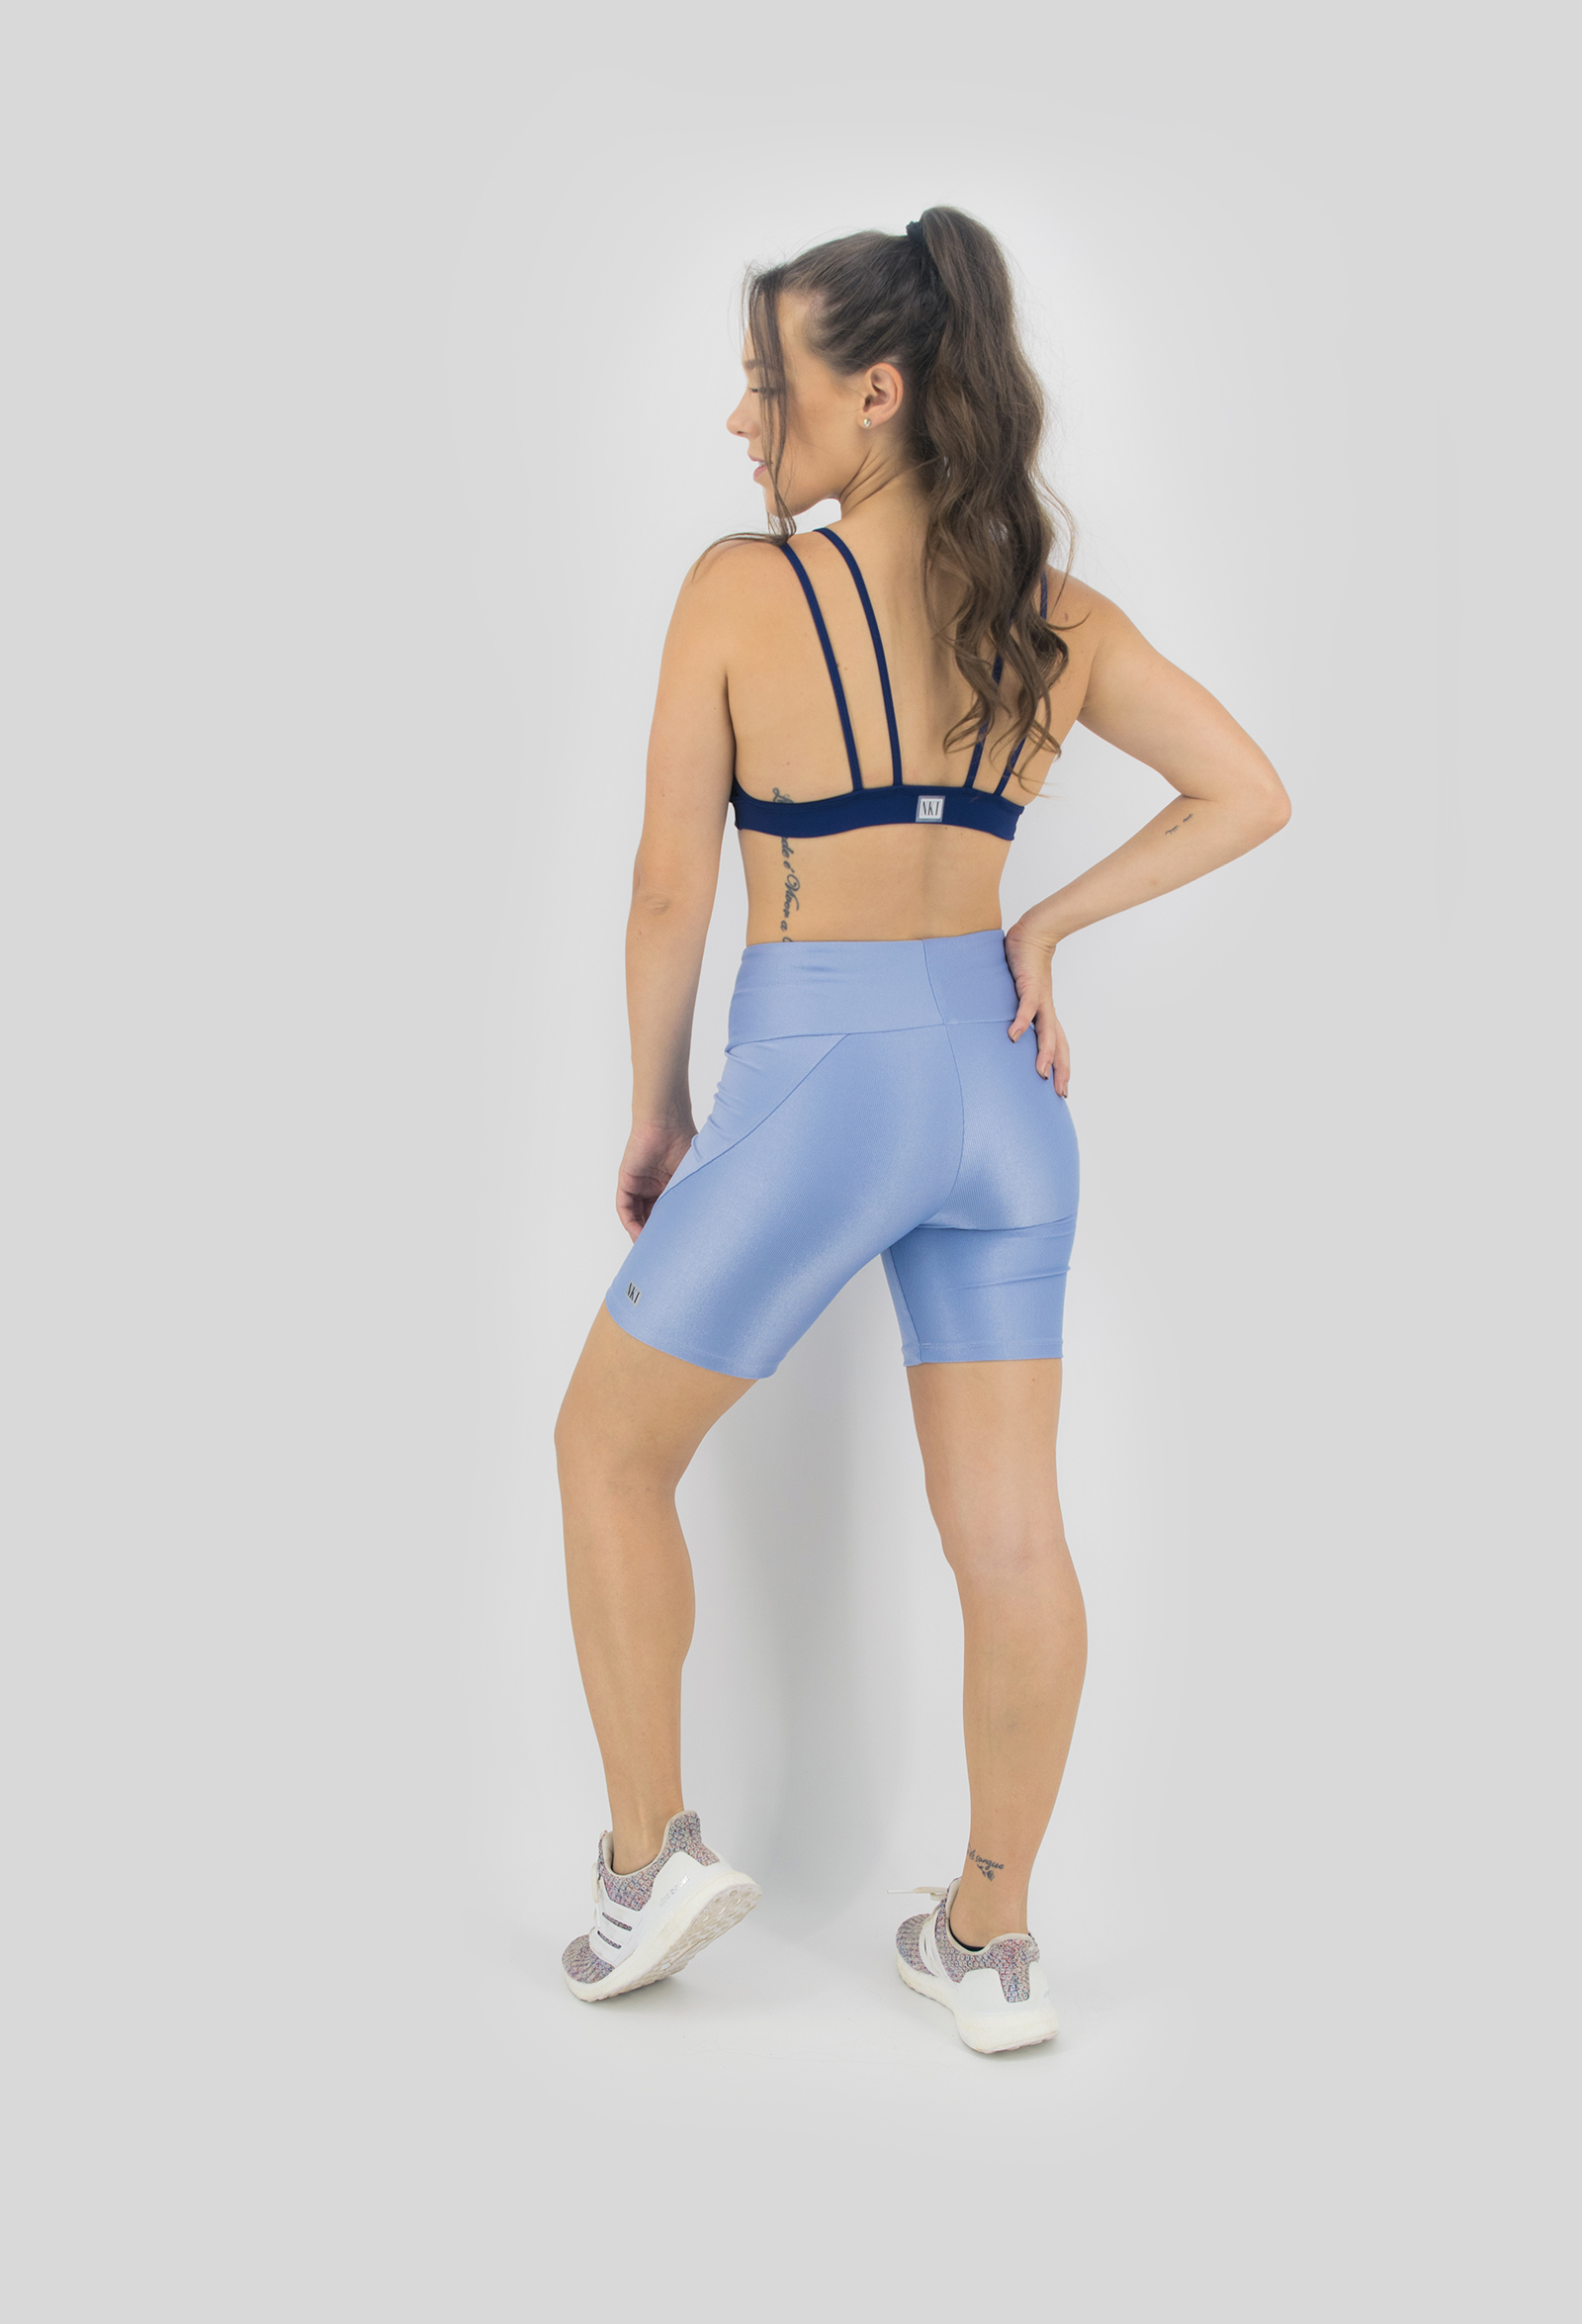 Bermuda Femme Azul Céu, Coleção Move Your Body - NKT Fitwear Moda Fitness